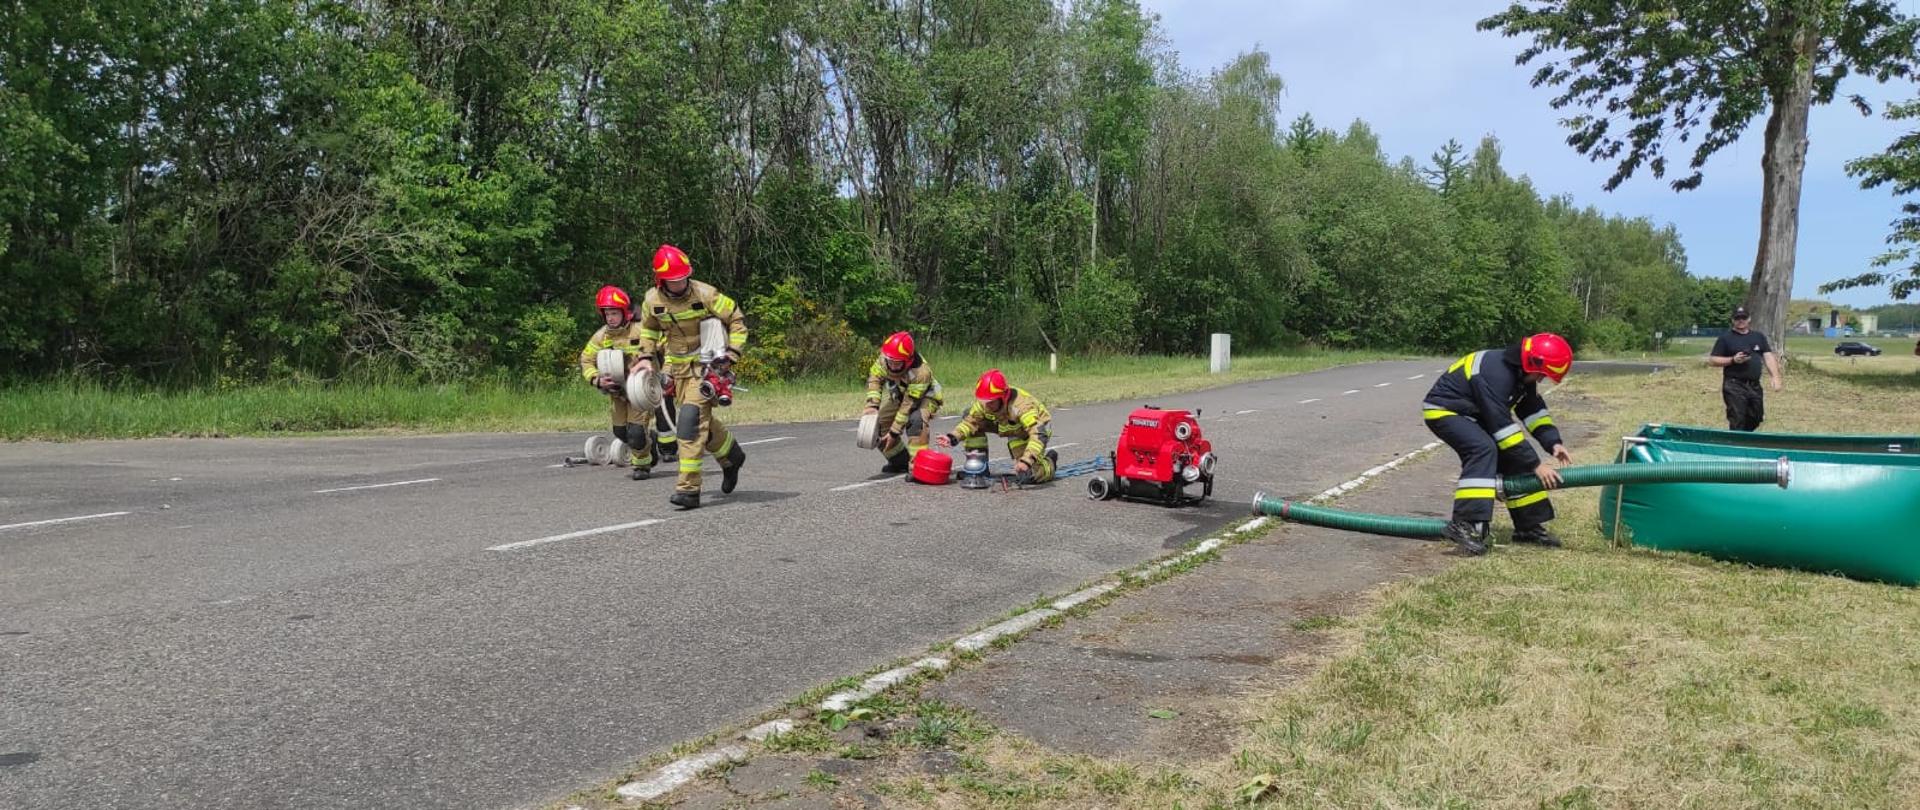 Zdjęcie przedstawia składanie linii ssawnej podczas zawodów przez kilku strażaków.